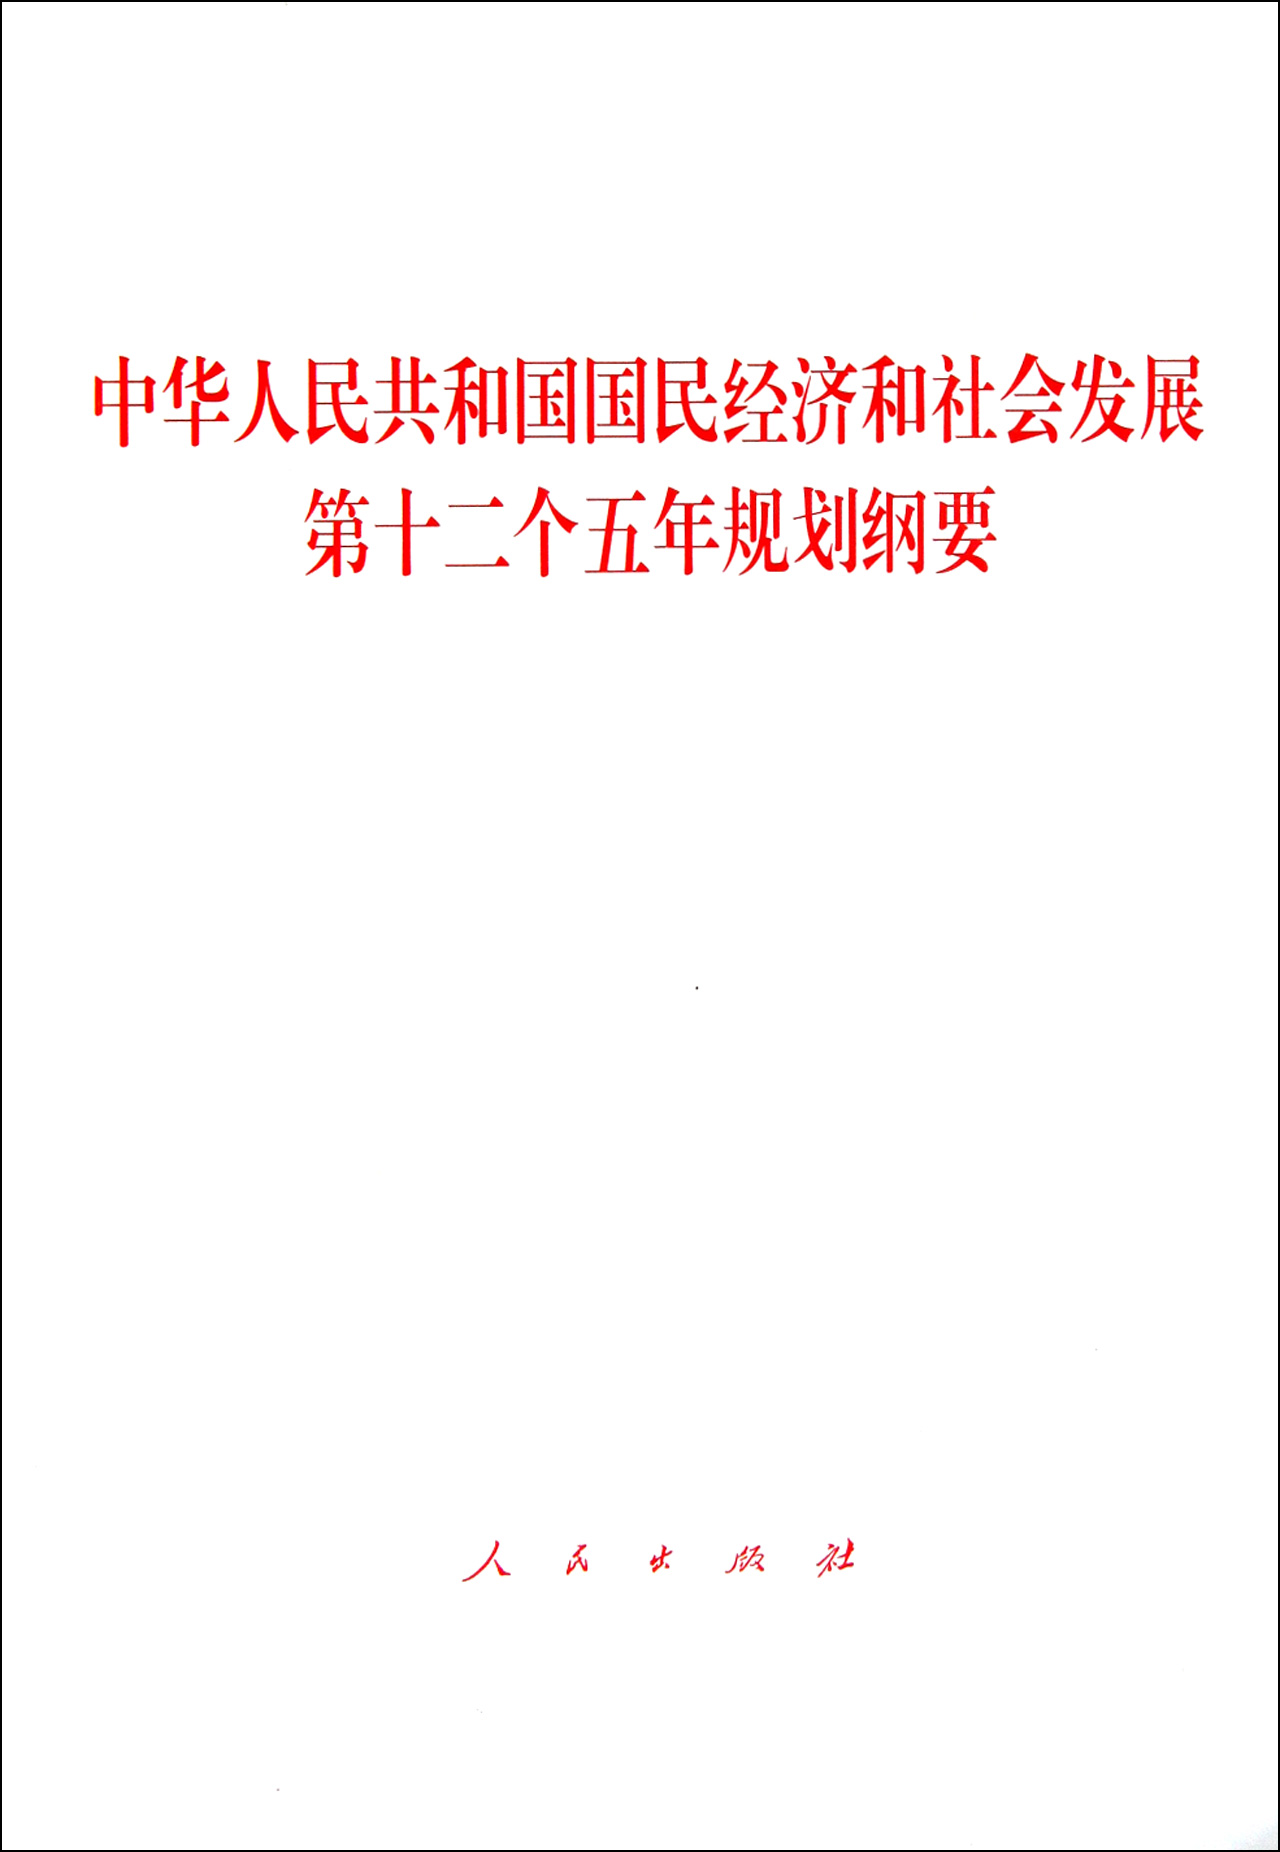 中華人民共和國國民經濟和社會發展第十二個五年規劃綱要(國民經濟和社會發展第十二個五年規劃綱要)